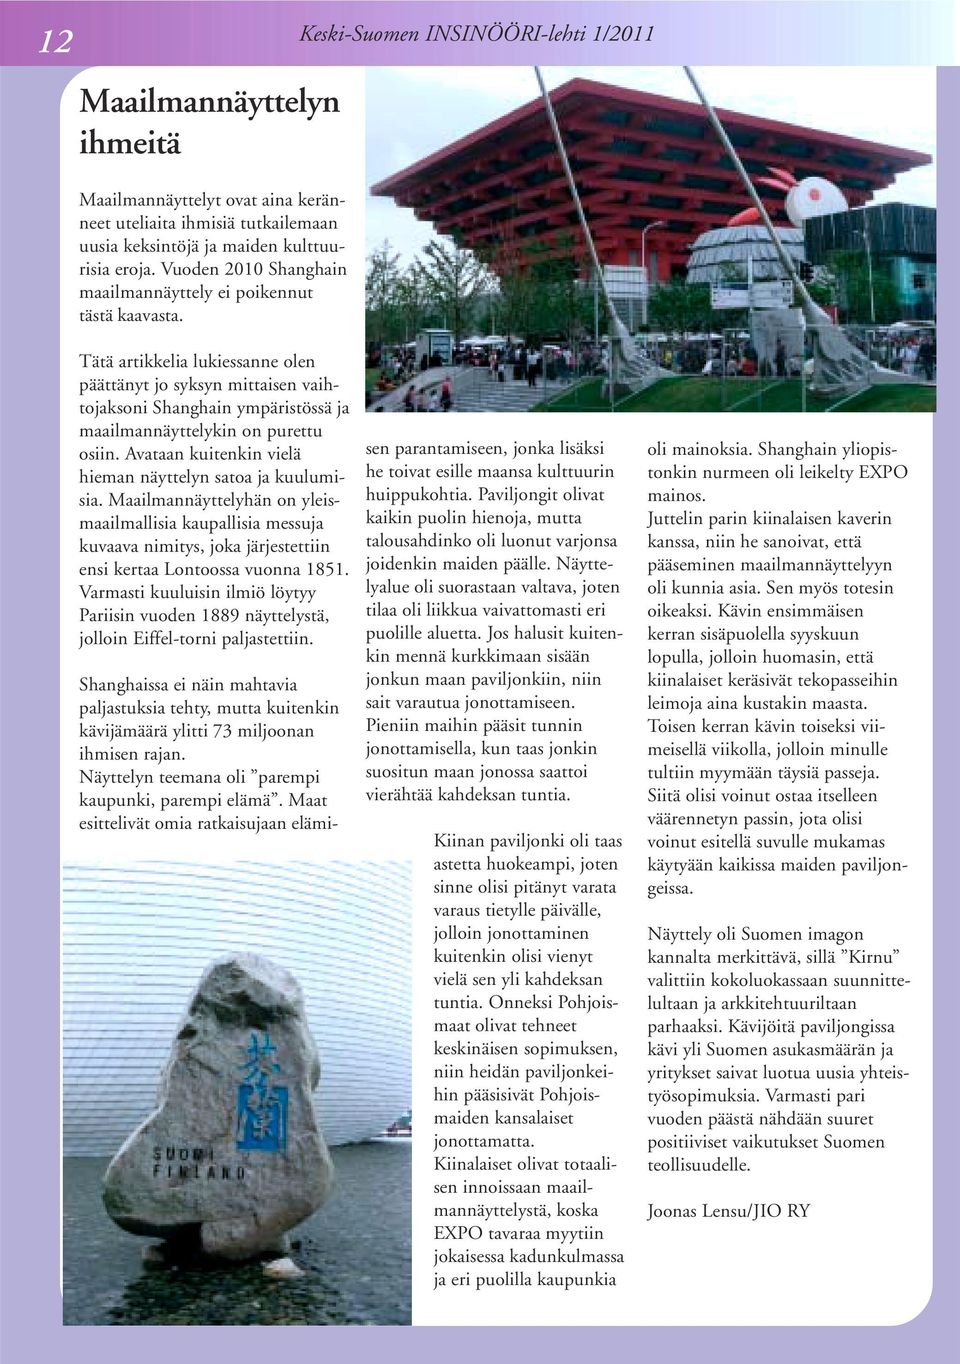 Keski-Suomen INSINÖÖRI-lehti 1/2011 Tätä artikkelia lukiessanne olen päättänyt jo syksyn mittaisen vaihtojaksoni Shanghain ympäristössä ja maailmannäyttelykin on purettu osiin.